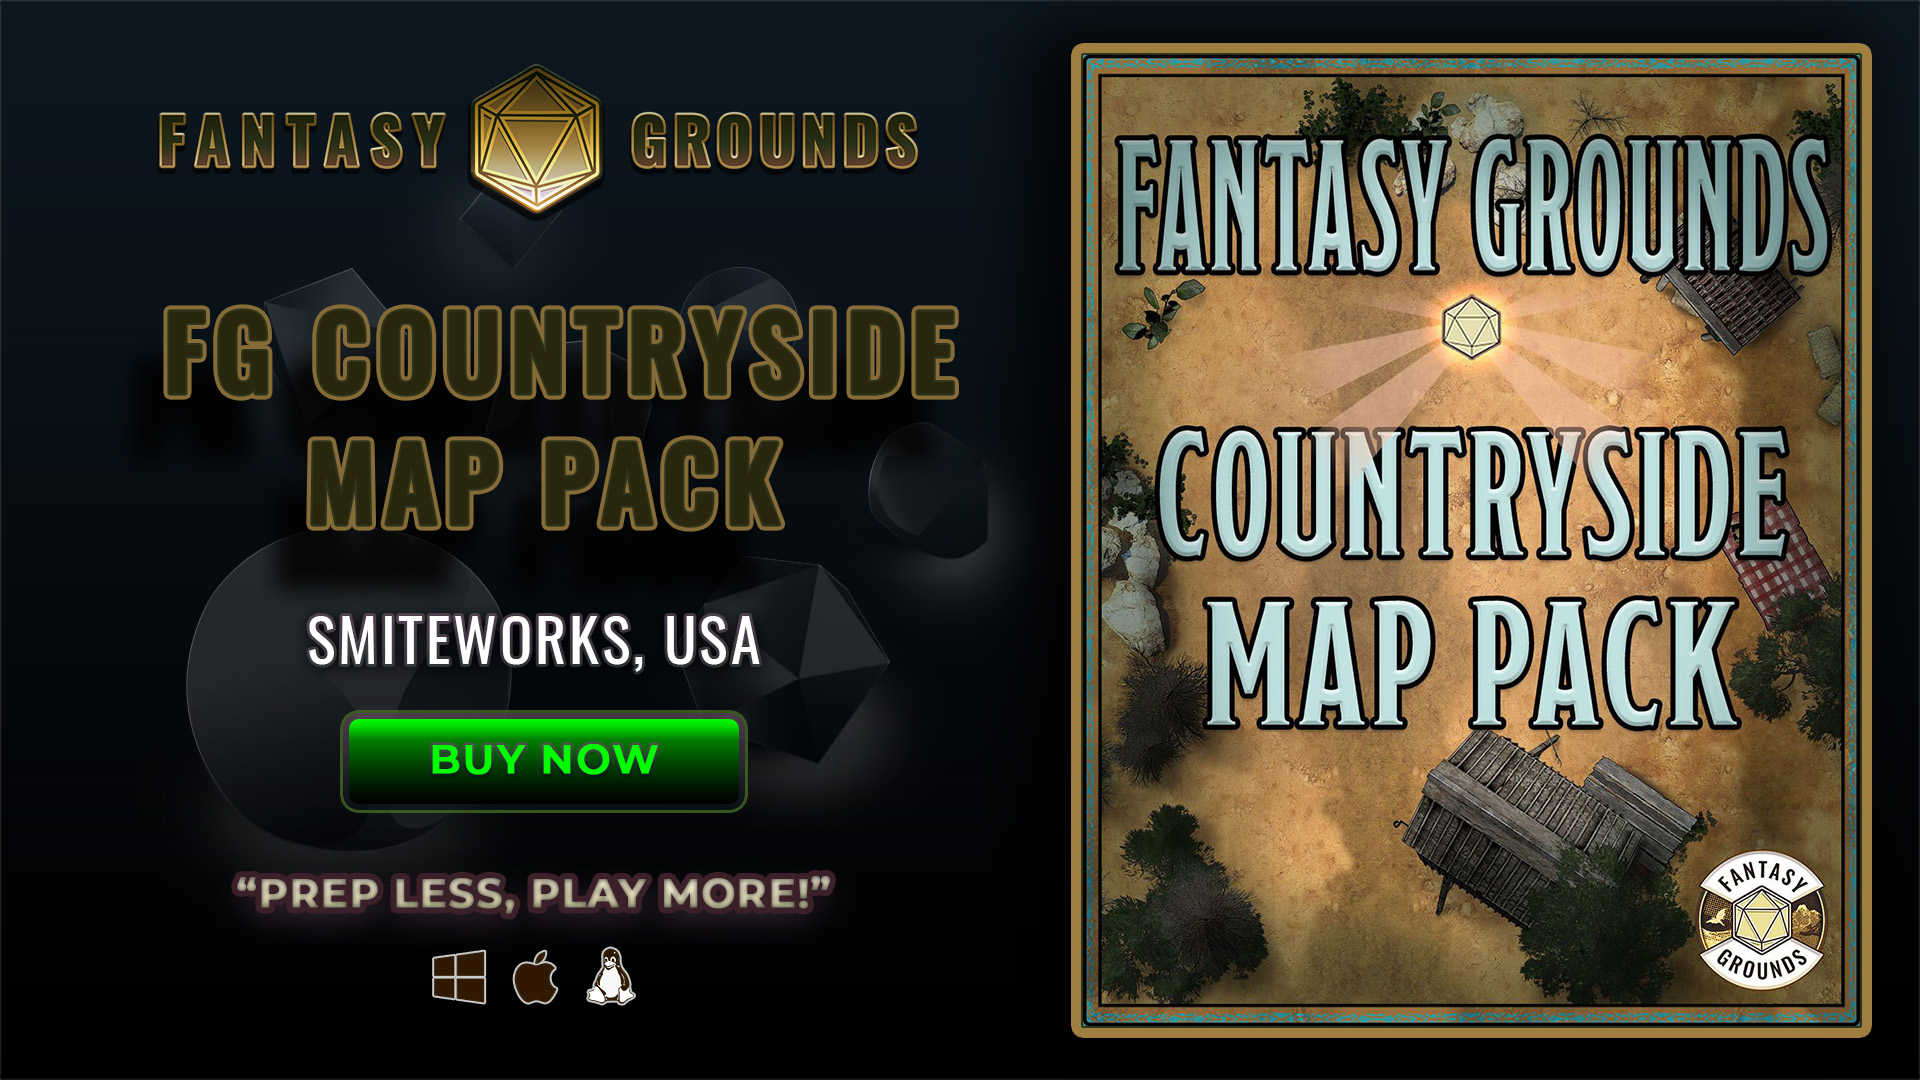 FG Countryside Map Pack(SWKARTPACKCOUNTRYSIDE).jpg